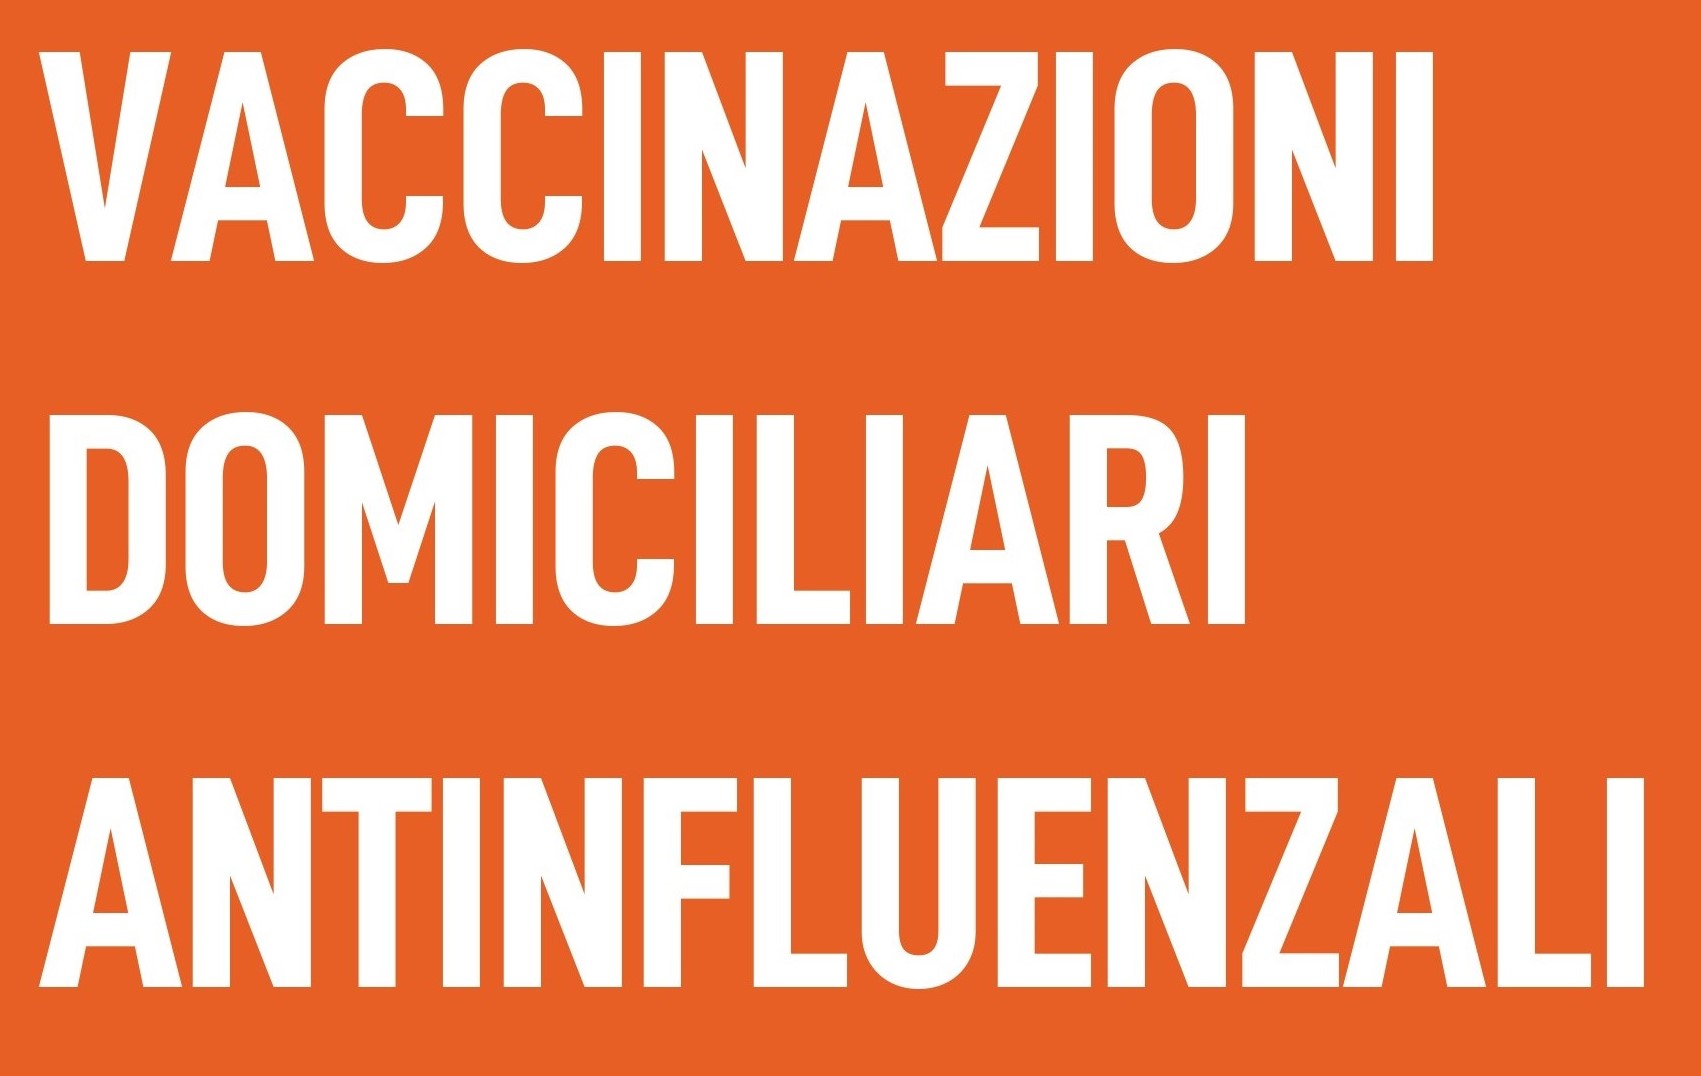 Vaccinazioni domiciliari antinfluenzali